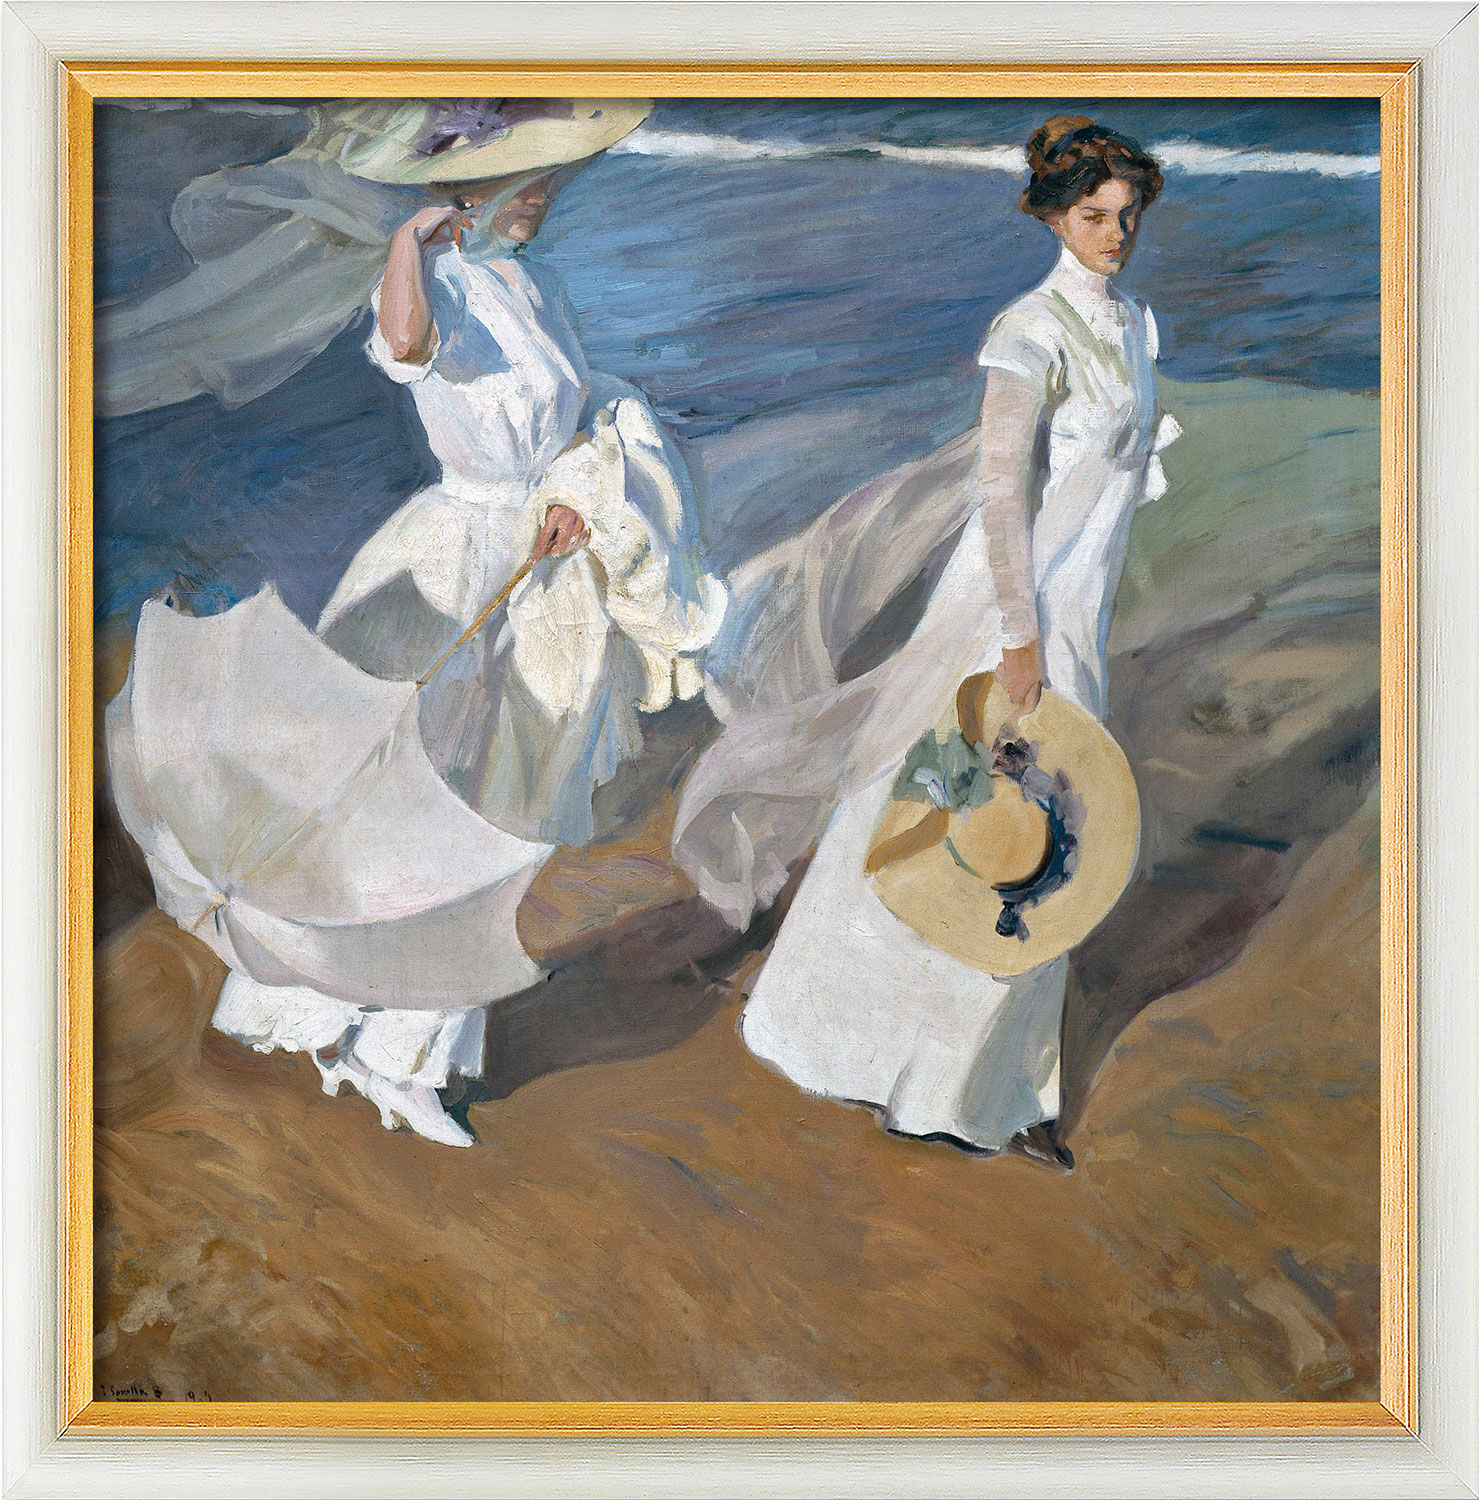 Beeld "Wandeling op het strand" (1909), wit met gouden lijst von Joaquín Sorolla y Bastida